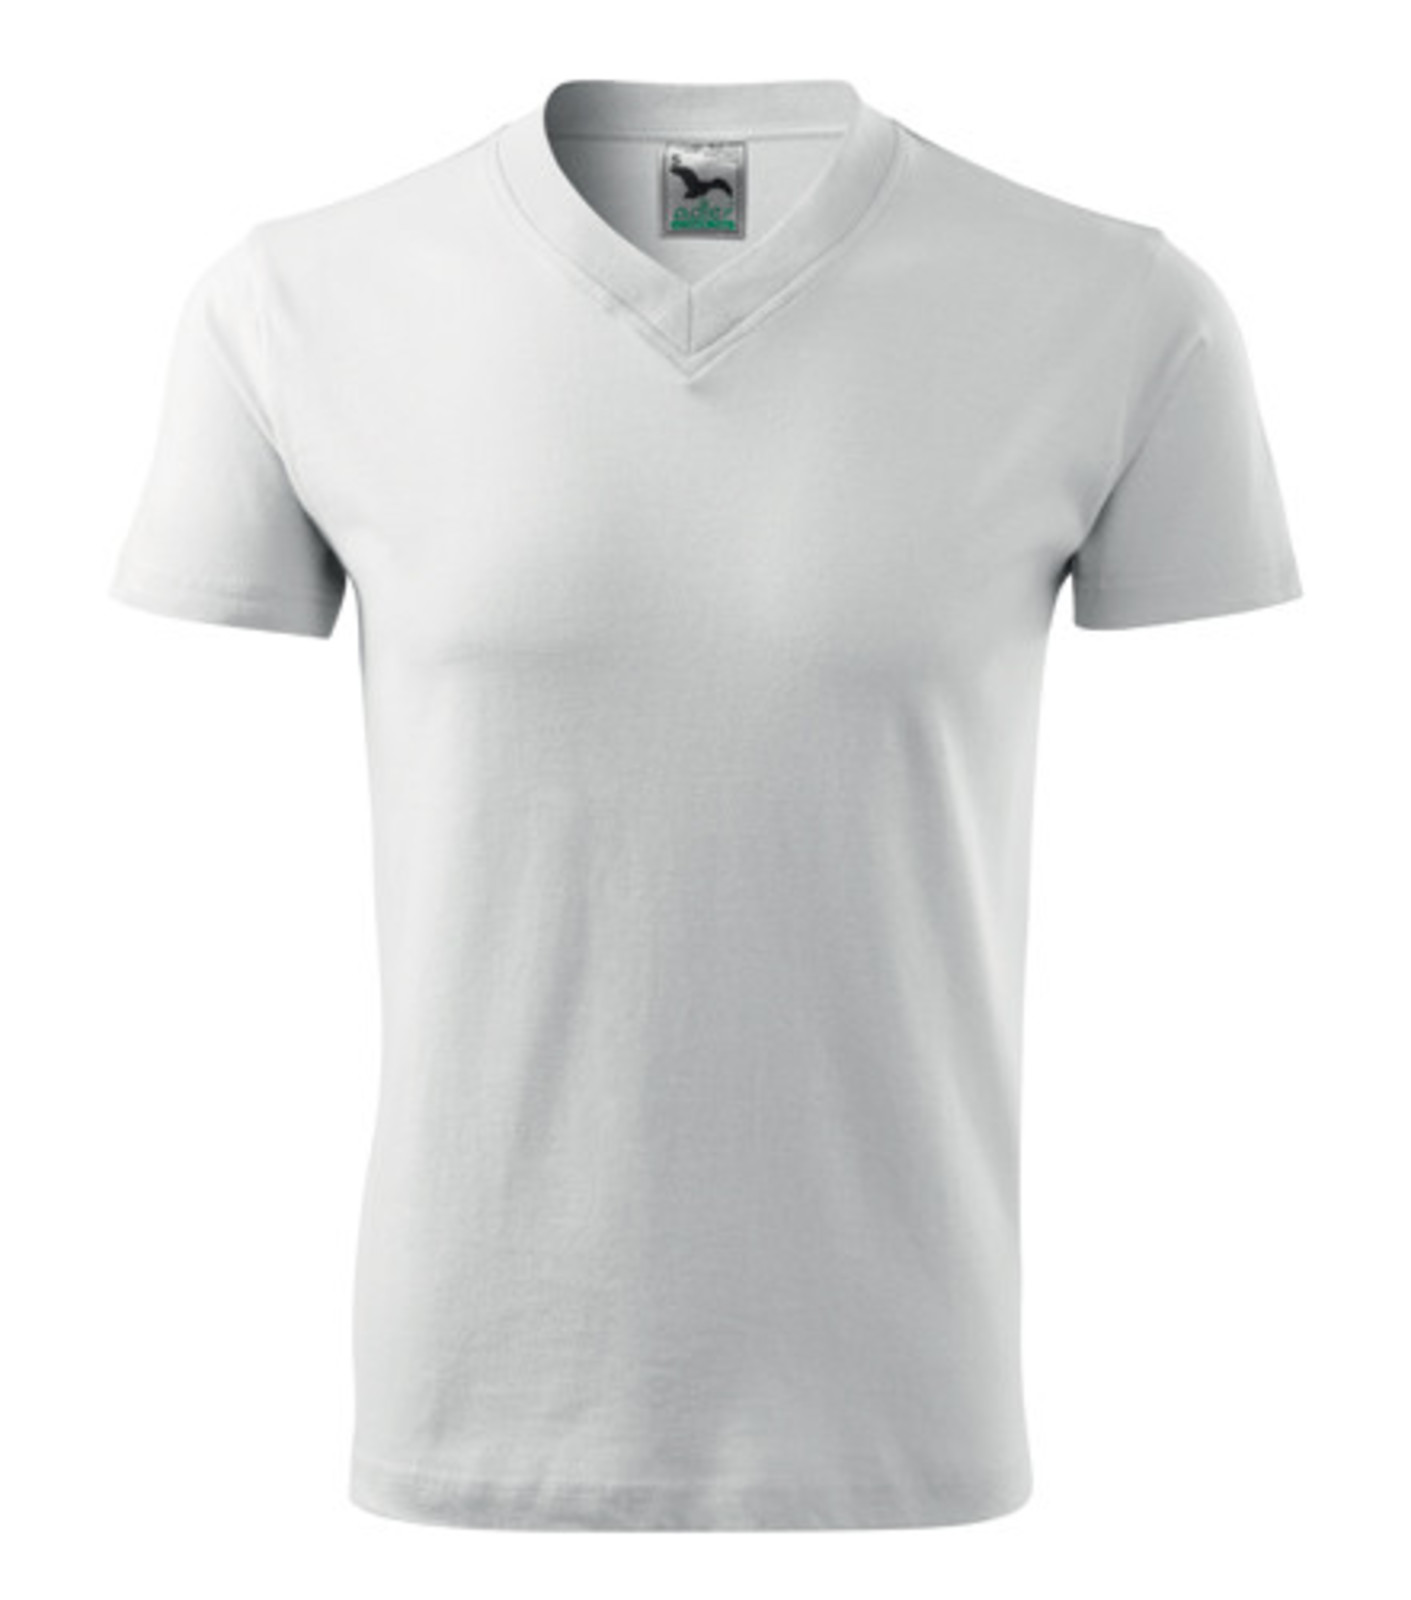 Unisex tričko s výstrihom Adler V-Neck 102 - veľkosť: M, farba: biela